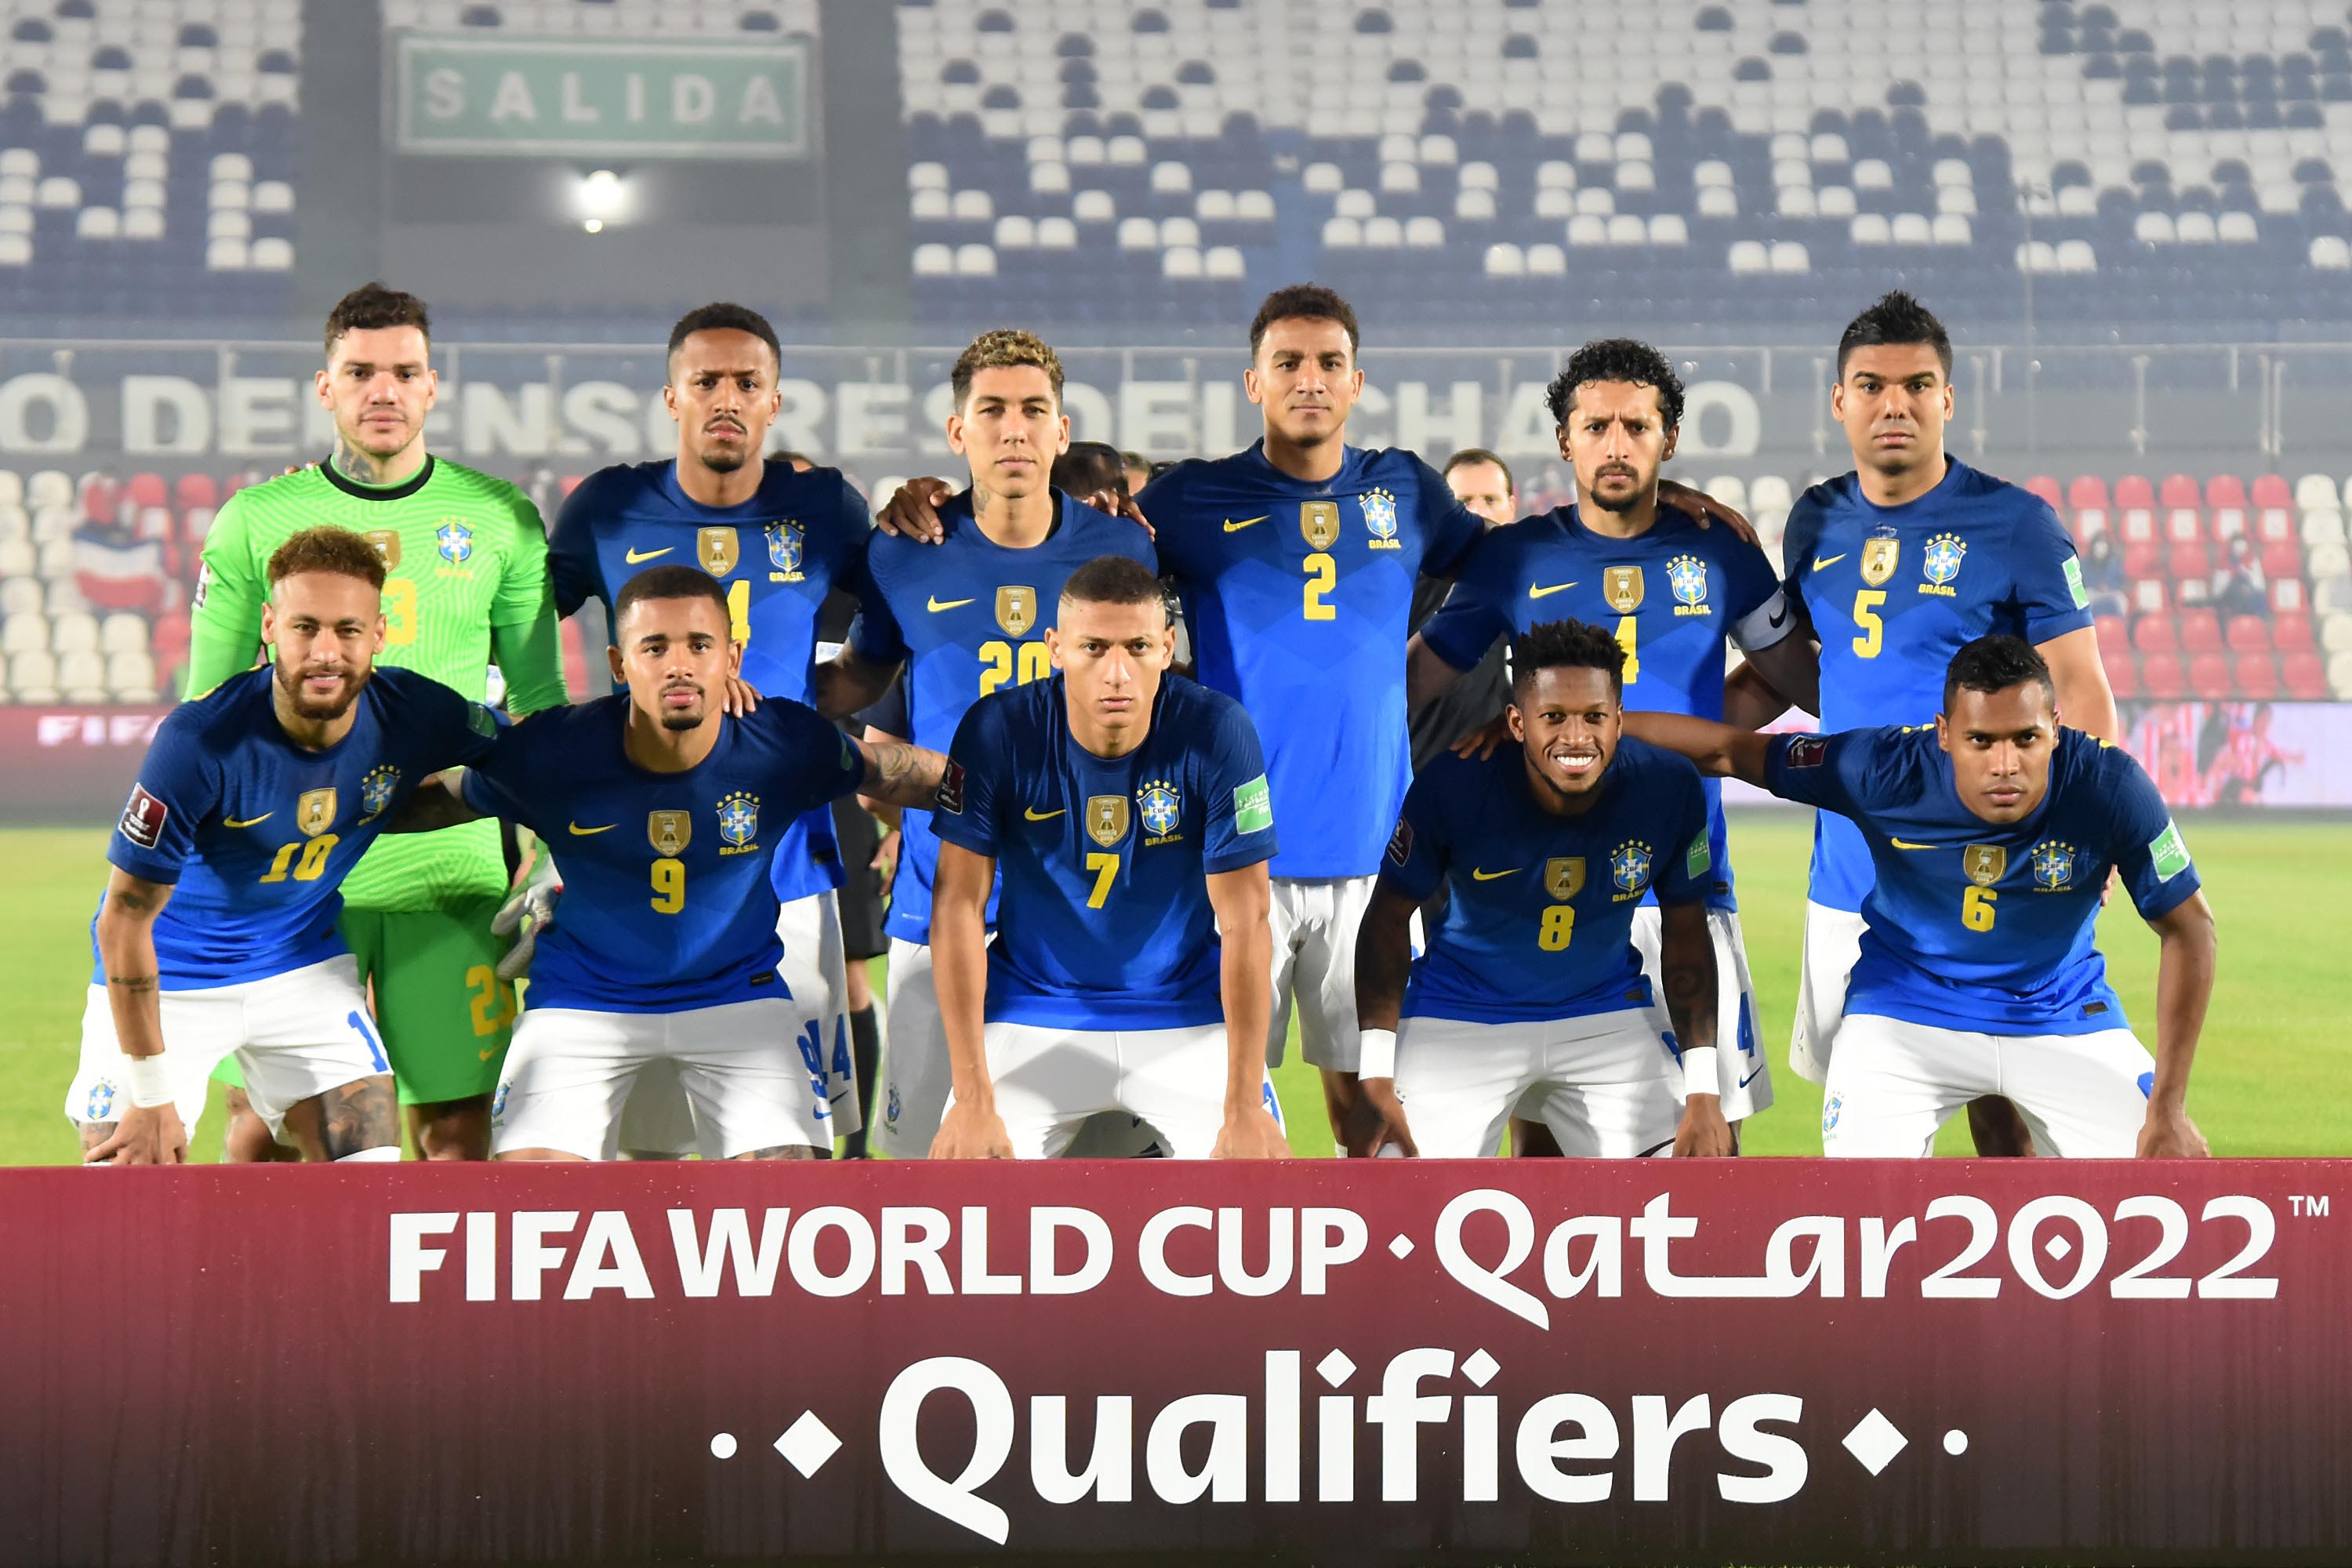 Brazilian players and staff criticize Copa America in a public letter